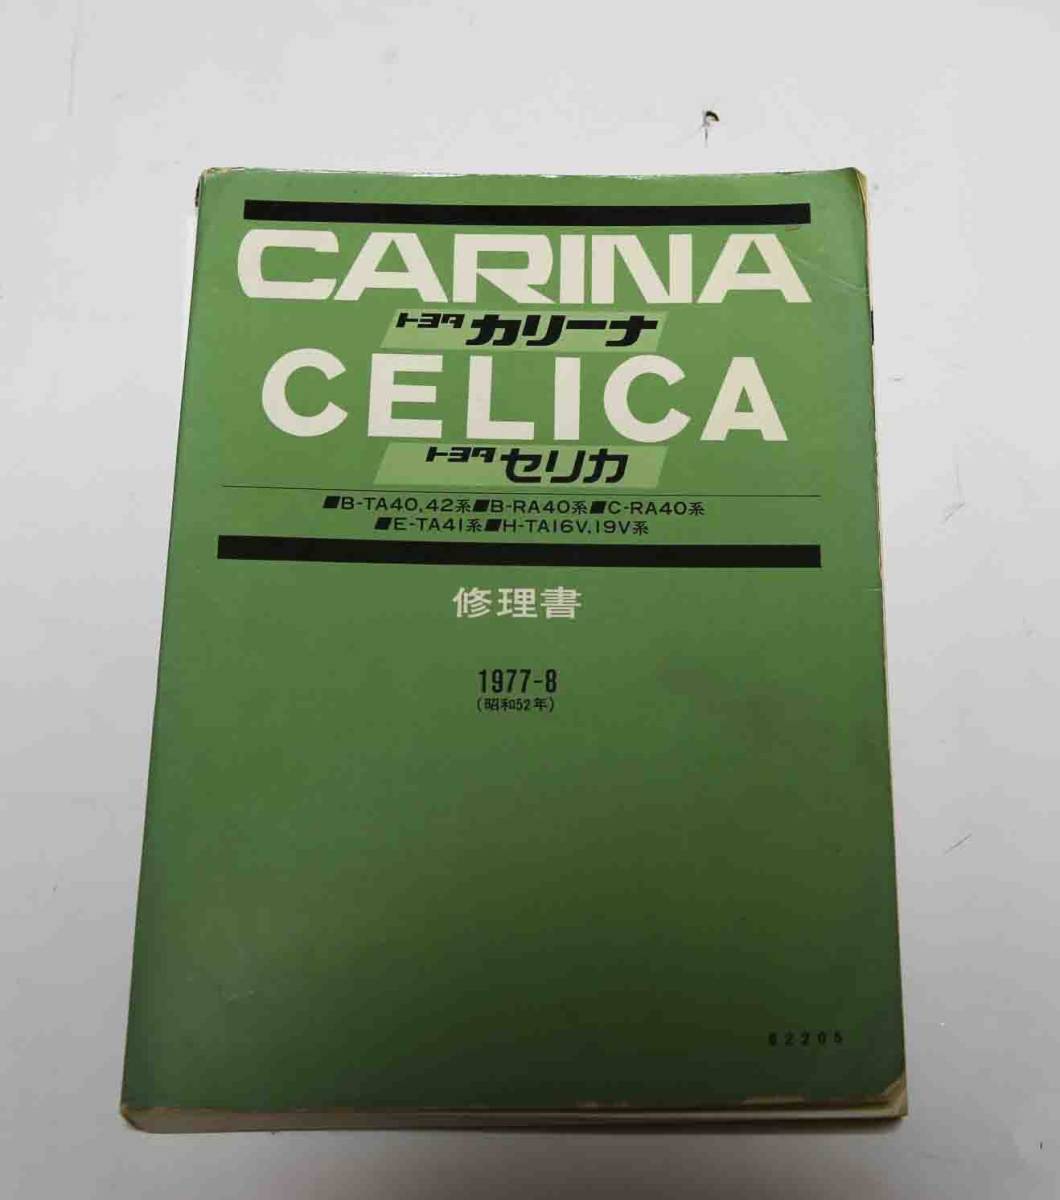 トヨタ CARINA CELICA カリーナ セリカ 修理書 1977-8 サービスマニュアル B-TA40 42 B-RA40 C-RA40 E-TA41 H-TA16V 19Vの画像1